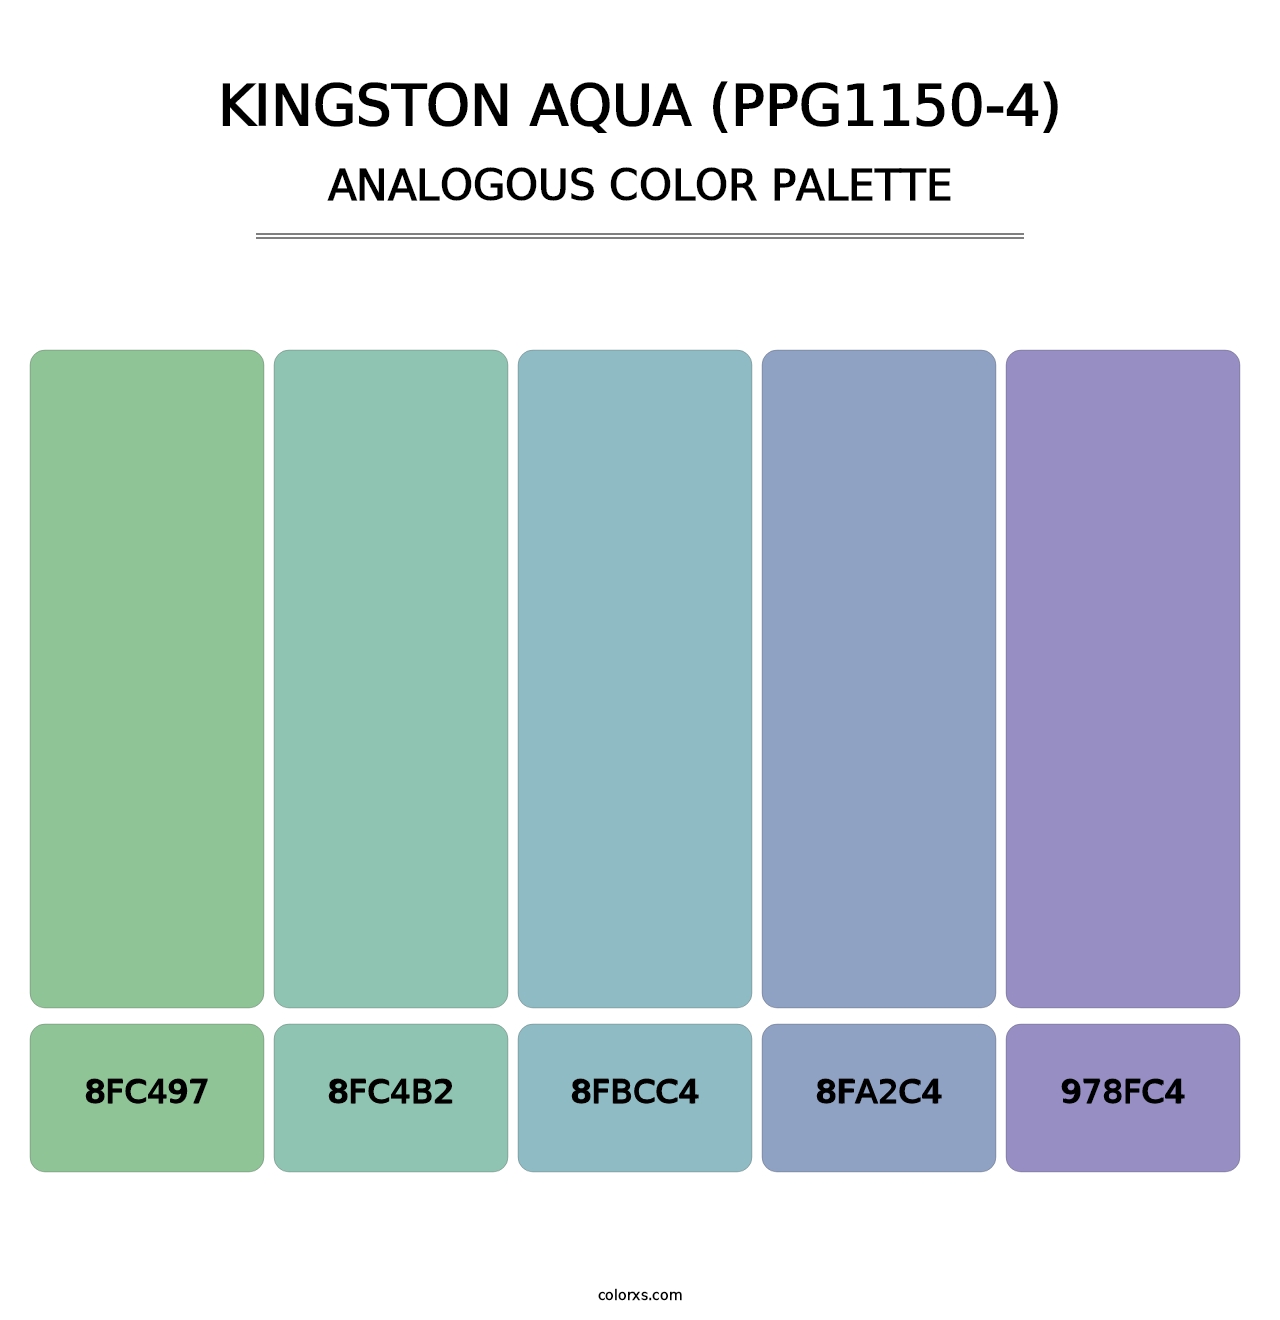 Kingston Aqua (PPG1150-4) - Analogous Color Palette